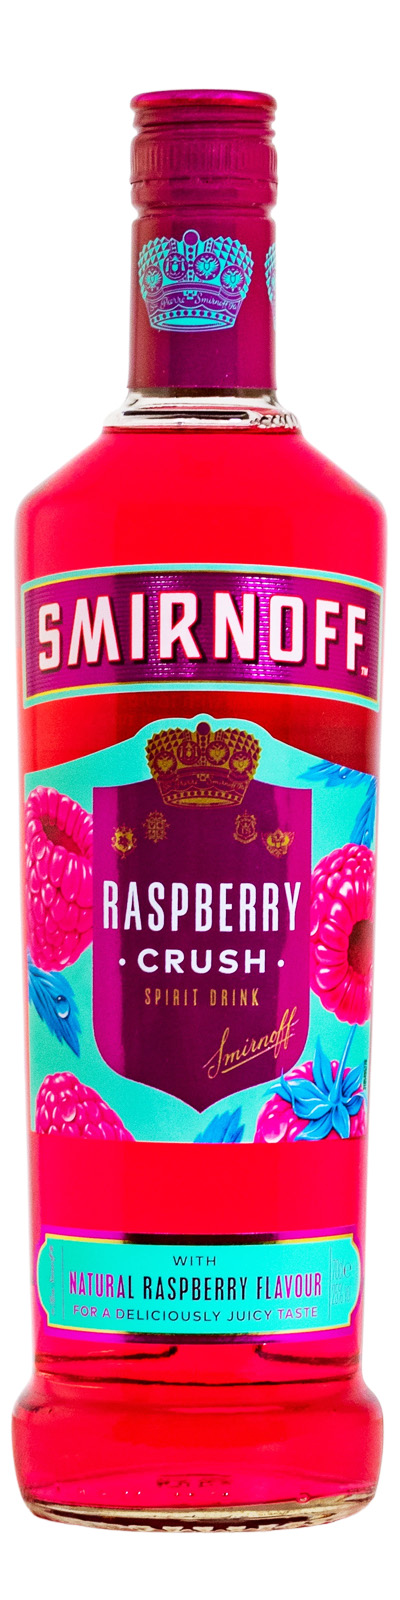 Smirnoff Flavoured günstig Raspberry Crush kaufen